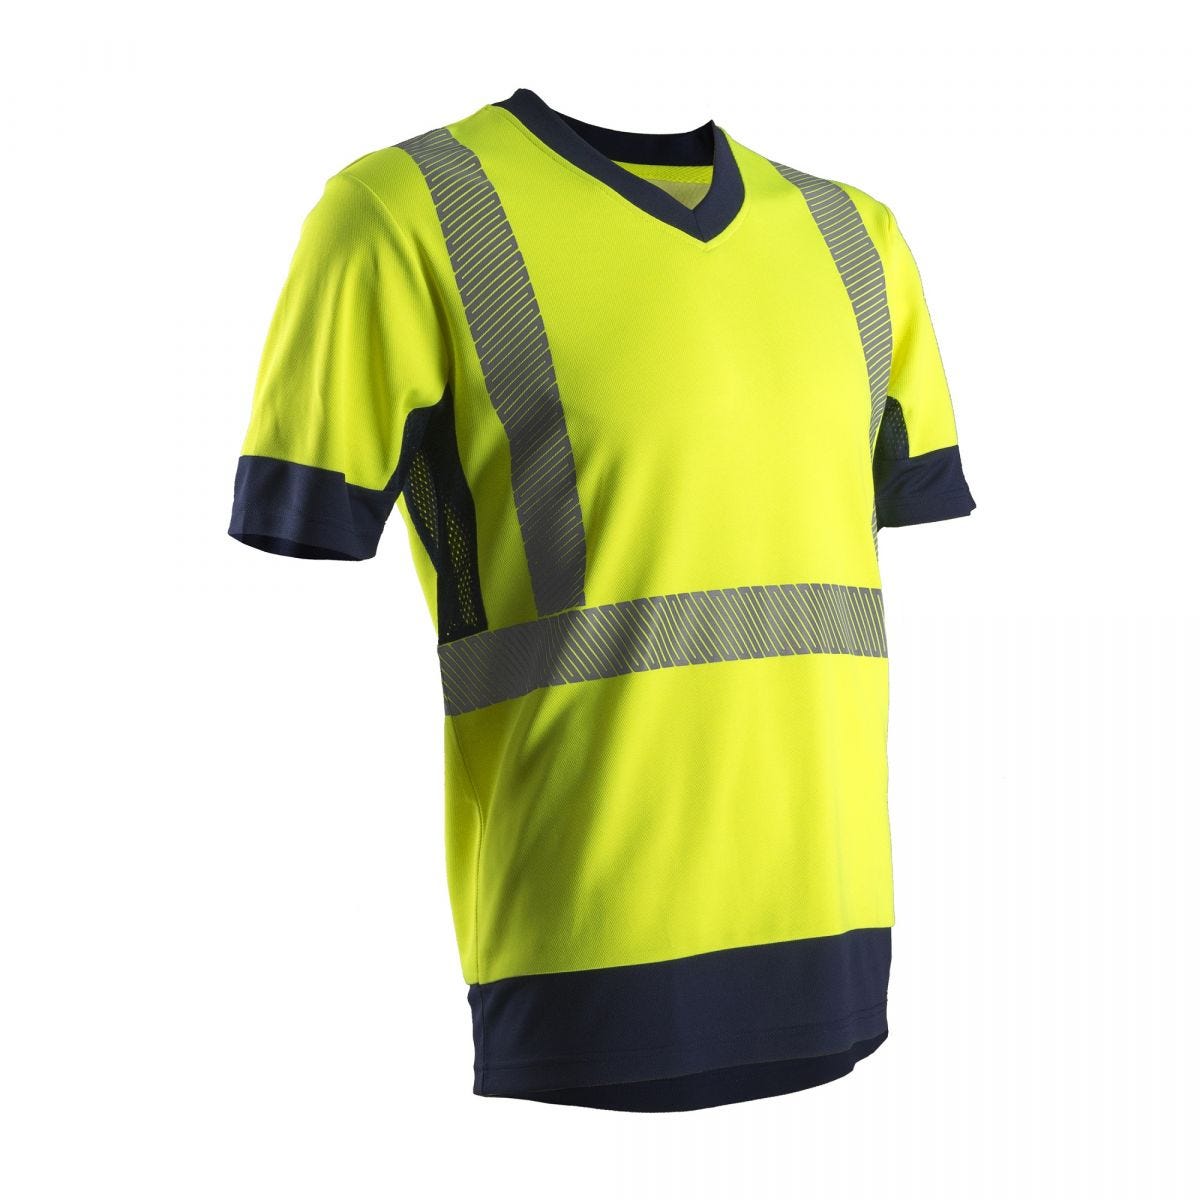 KOMO T-shirt MC, jaune HV/marine, 55%CO/45%PES, 150g/m² - COVERGUARD - Taille L 0